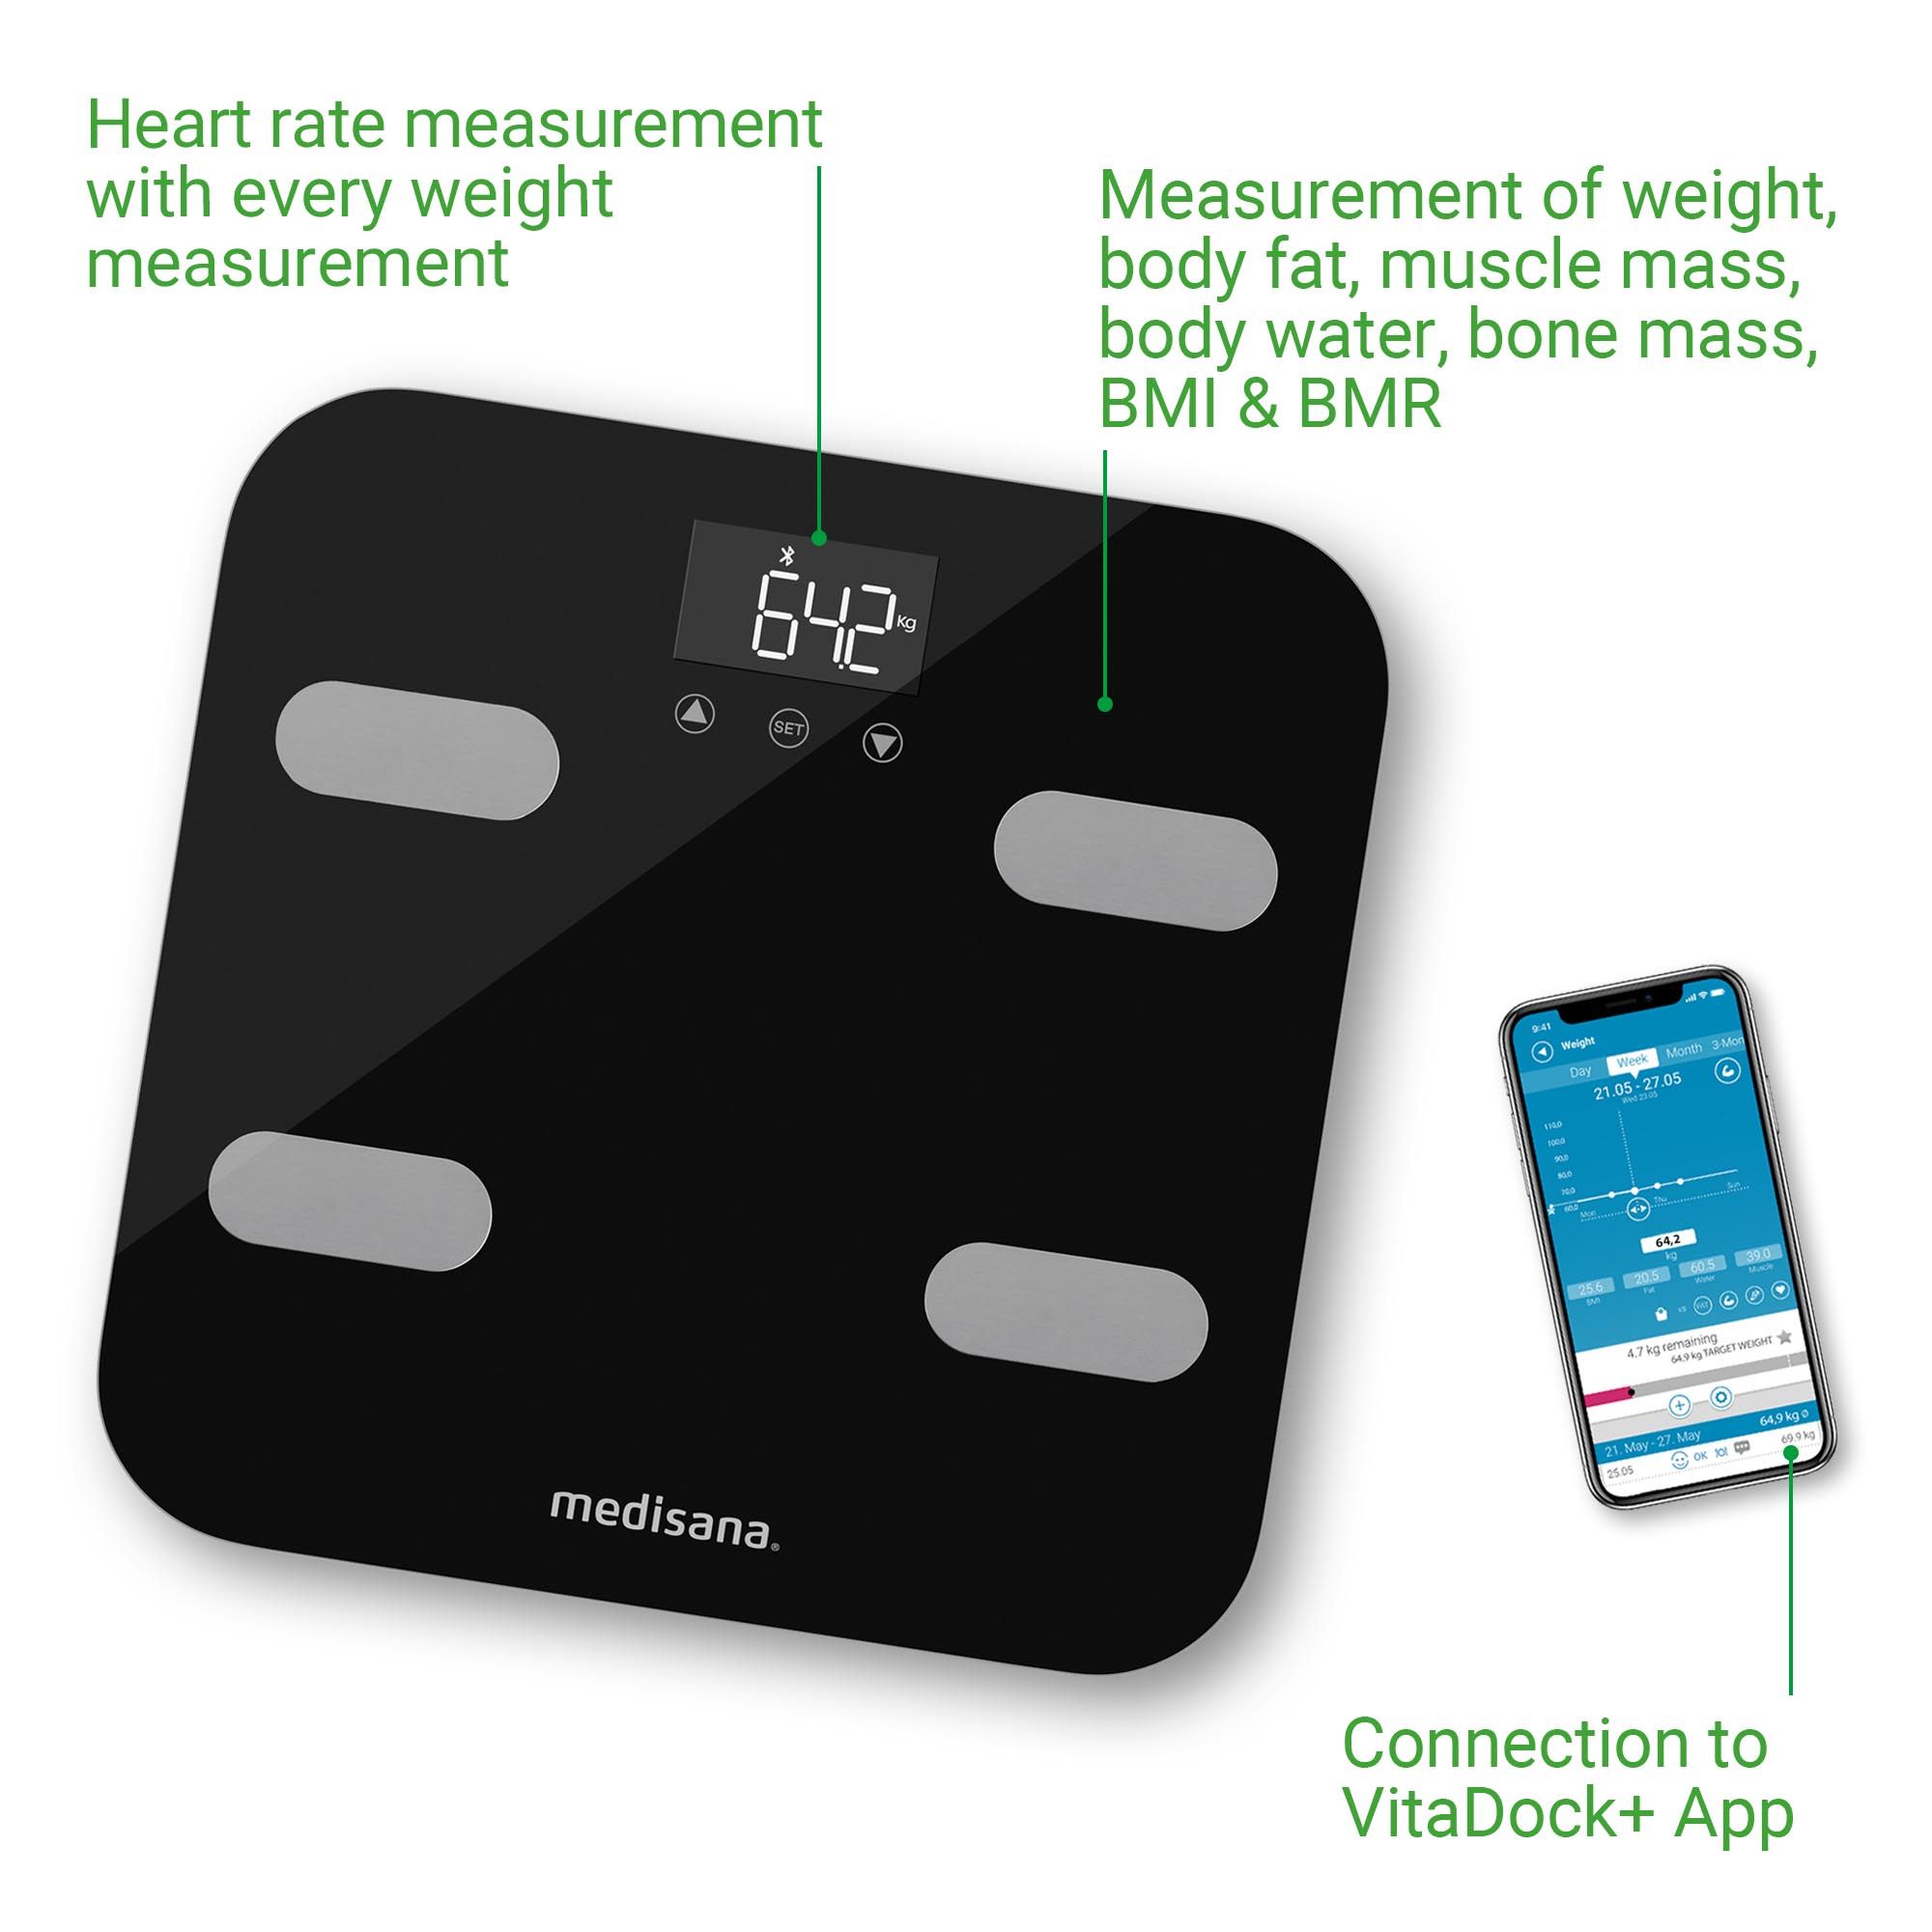 medisana BS 602 Körperanalysewaage | bis 180 KG | Personenwaage mit W-LAN und App | mit BMI-Rechner